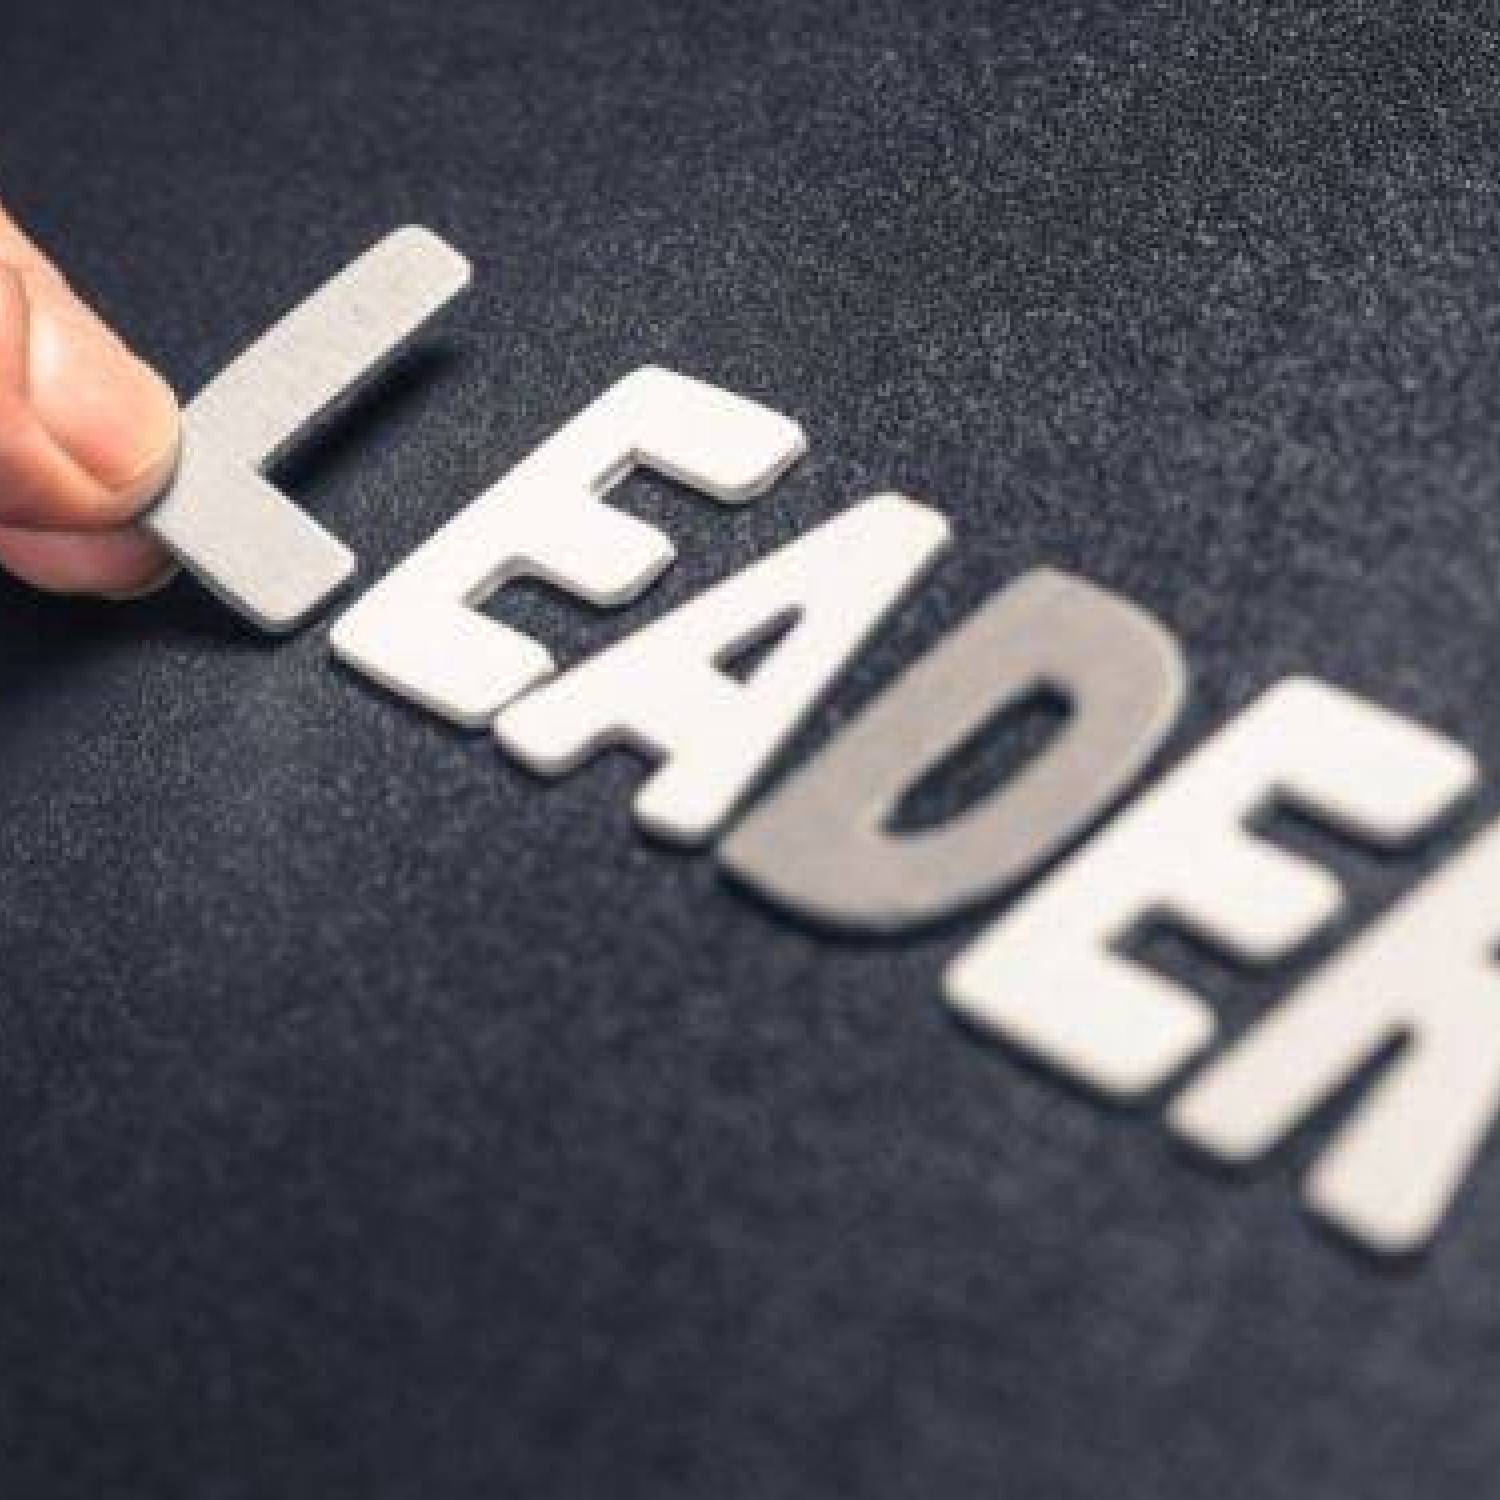 Cechy, które czynią z człowieka wielkiego przywódcę